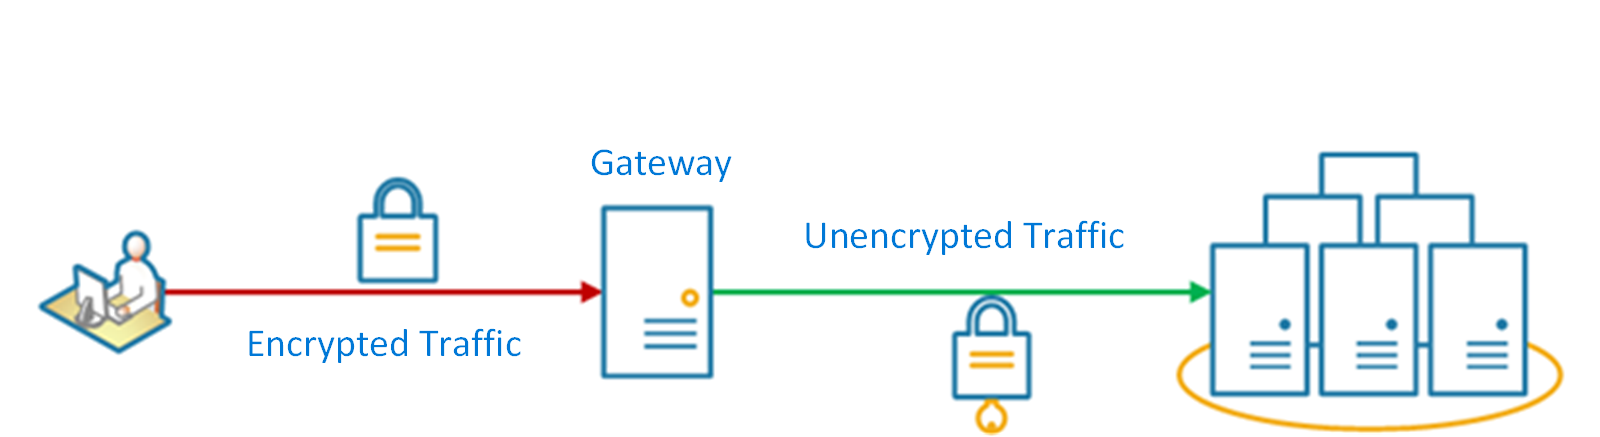 Diagrama do padrão de descarregamento de gateway